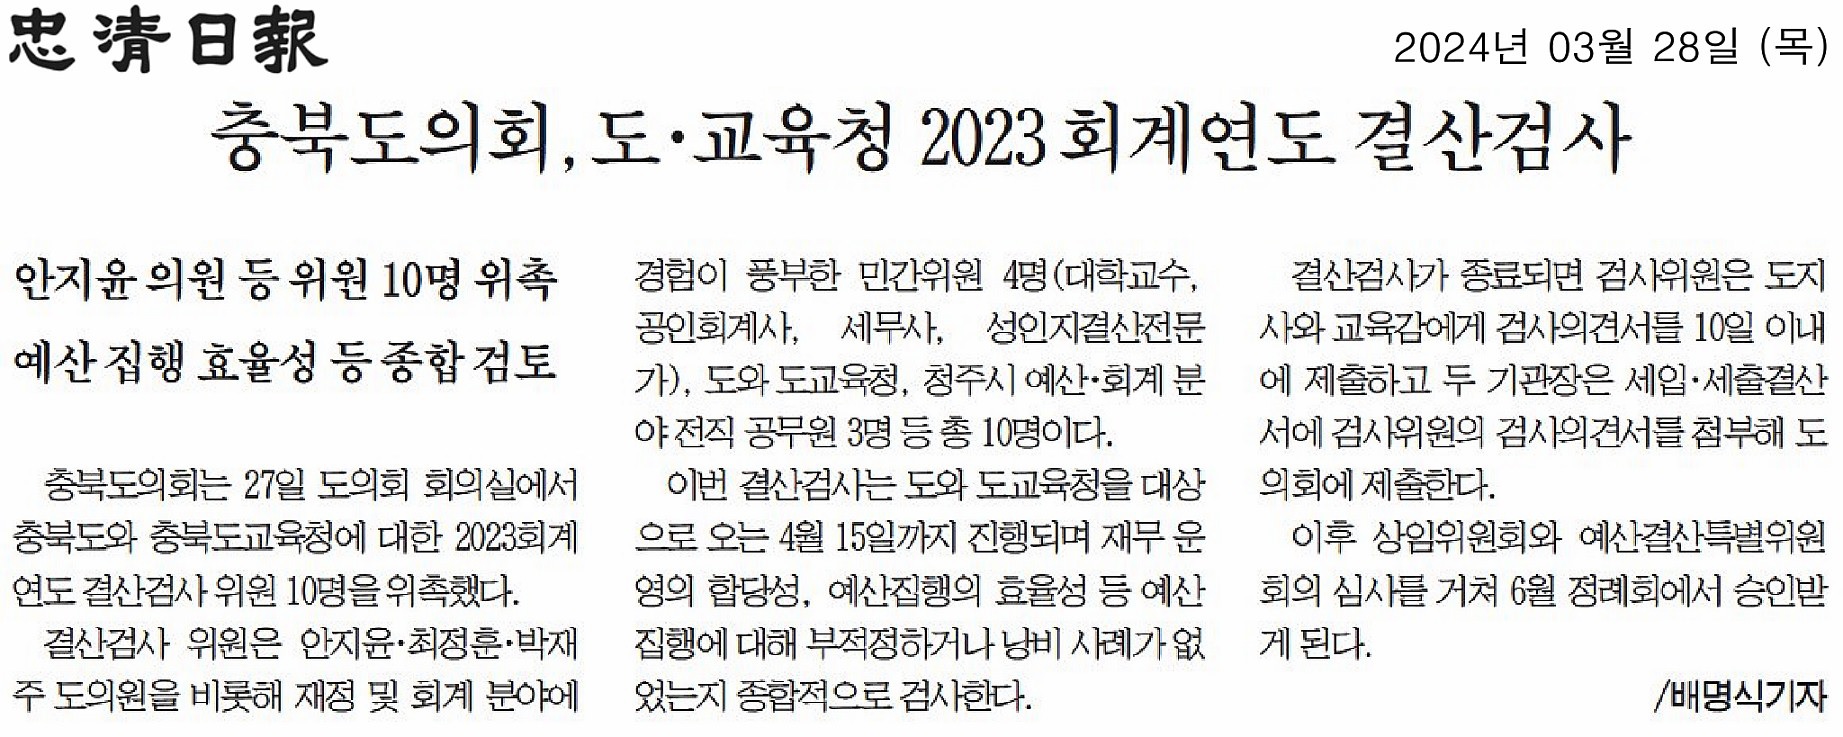 최정훈 의원, 2023년도 회계연도 결산검사 위원 위촉 - 1